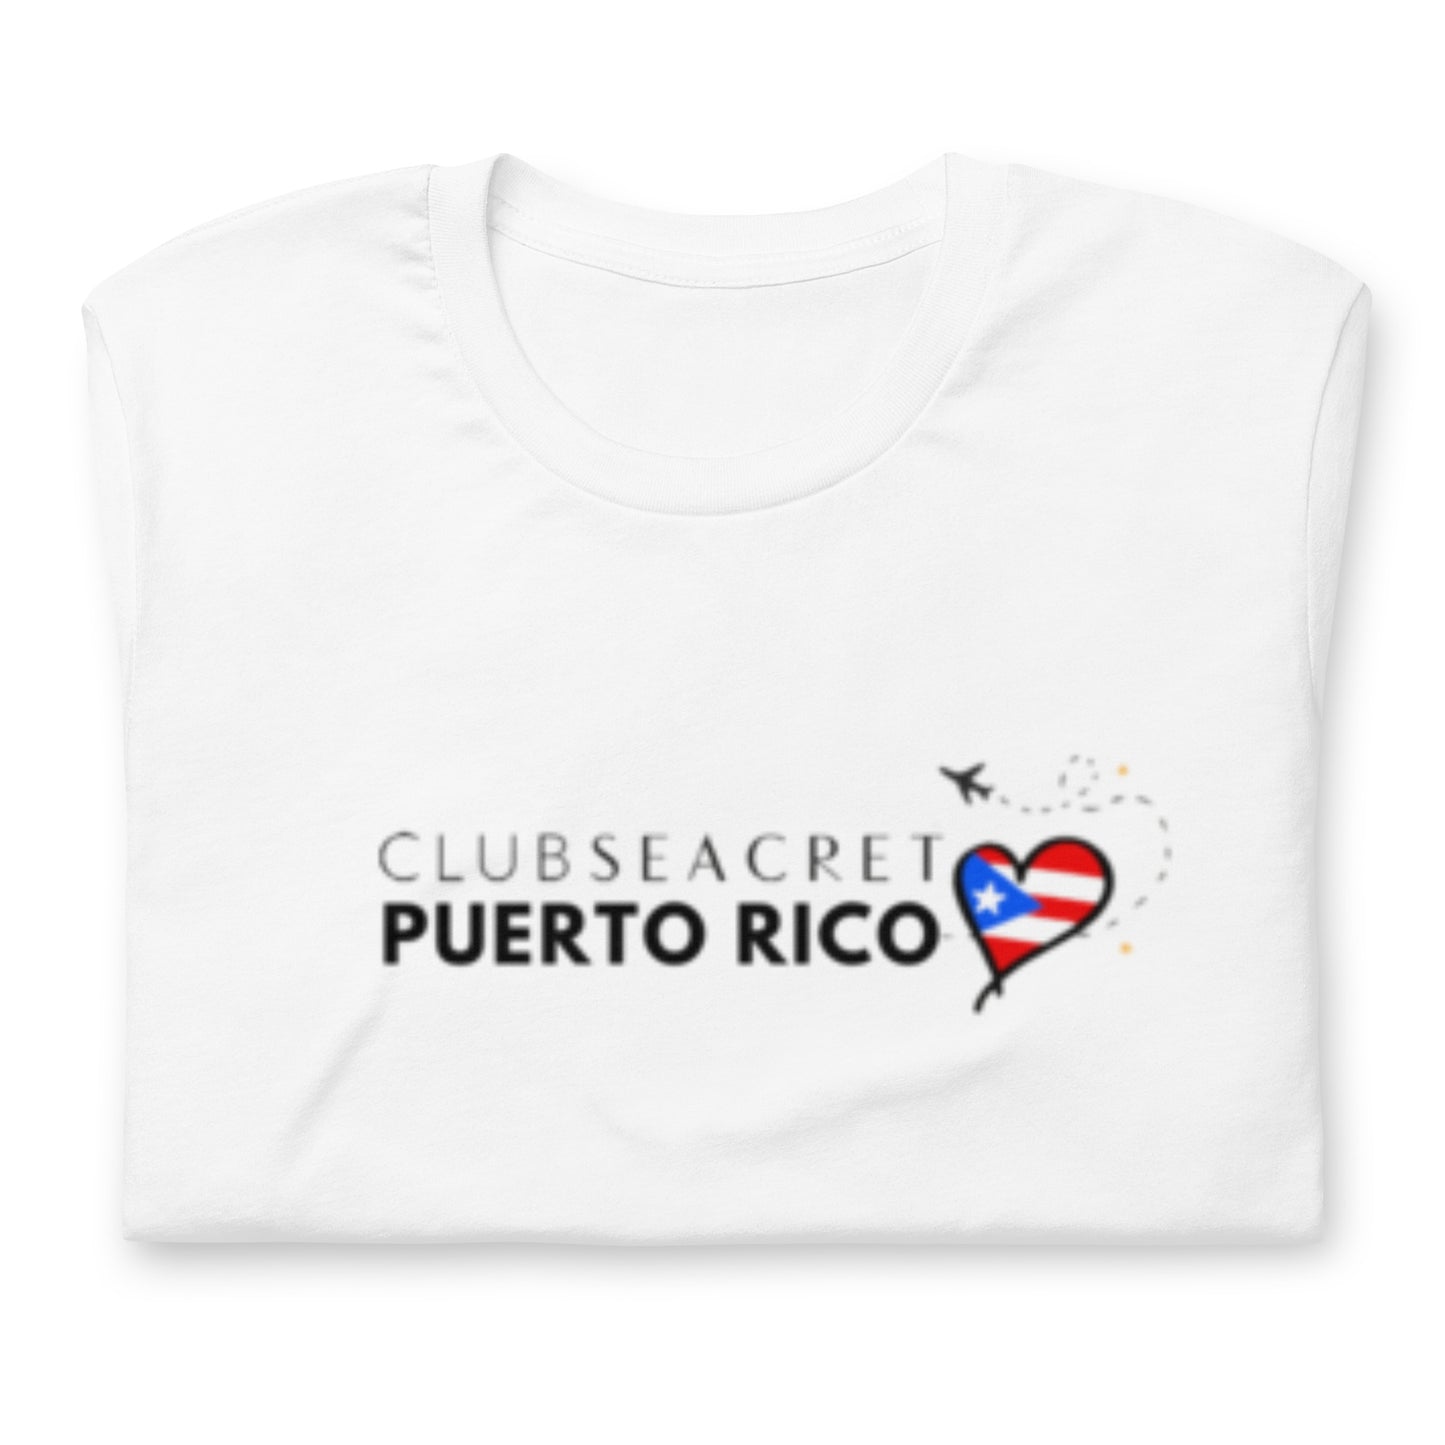 Club Seacret Puerto Rico - Camiseta de manga corta unisex